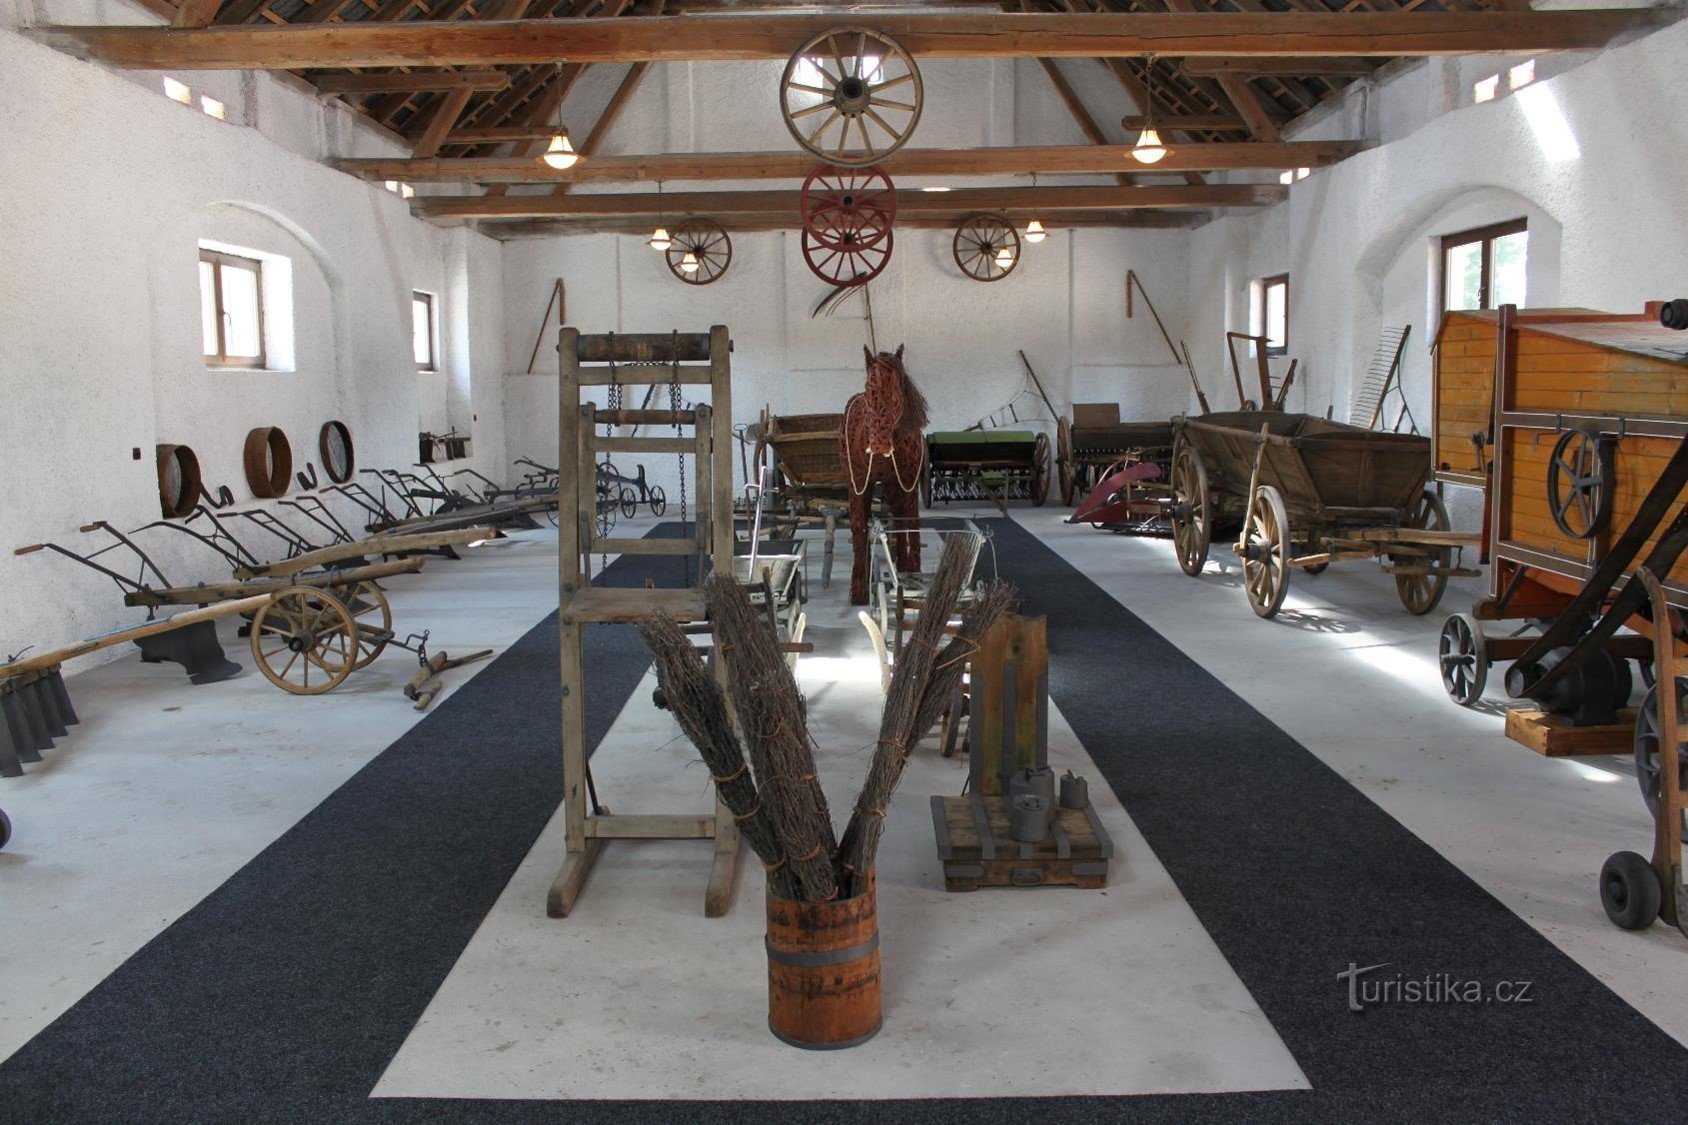 Museo Božetice della molitura, della panetteria e dell'agricoltura